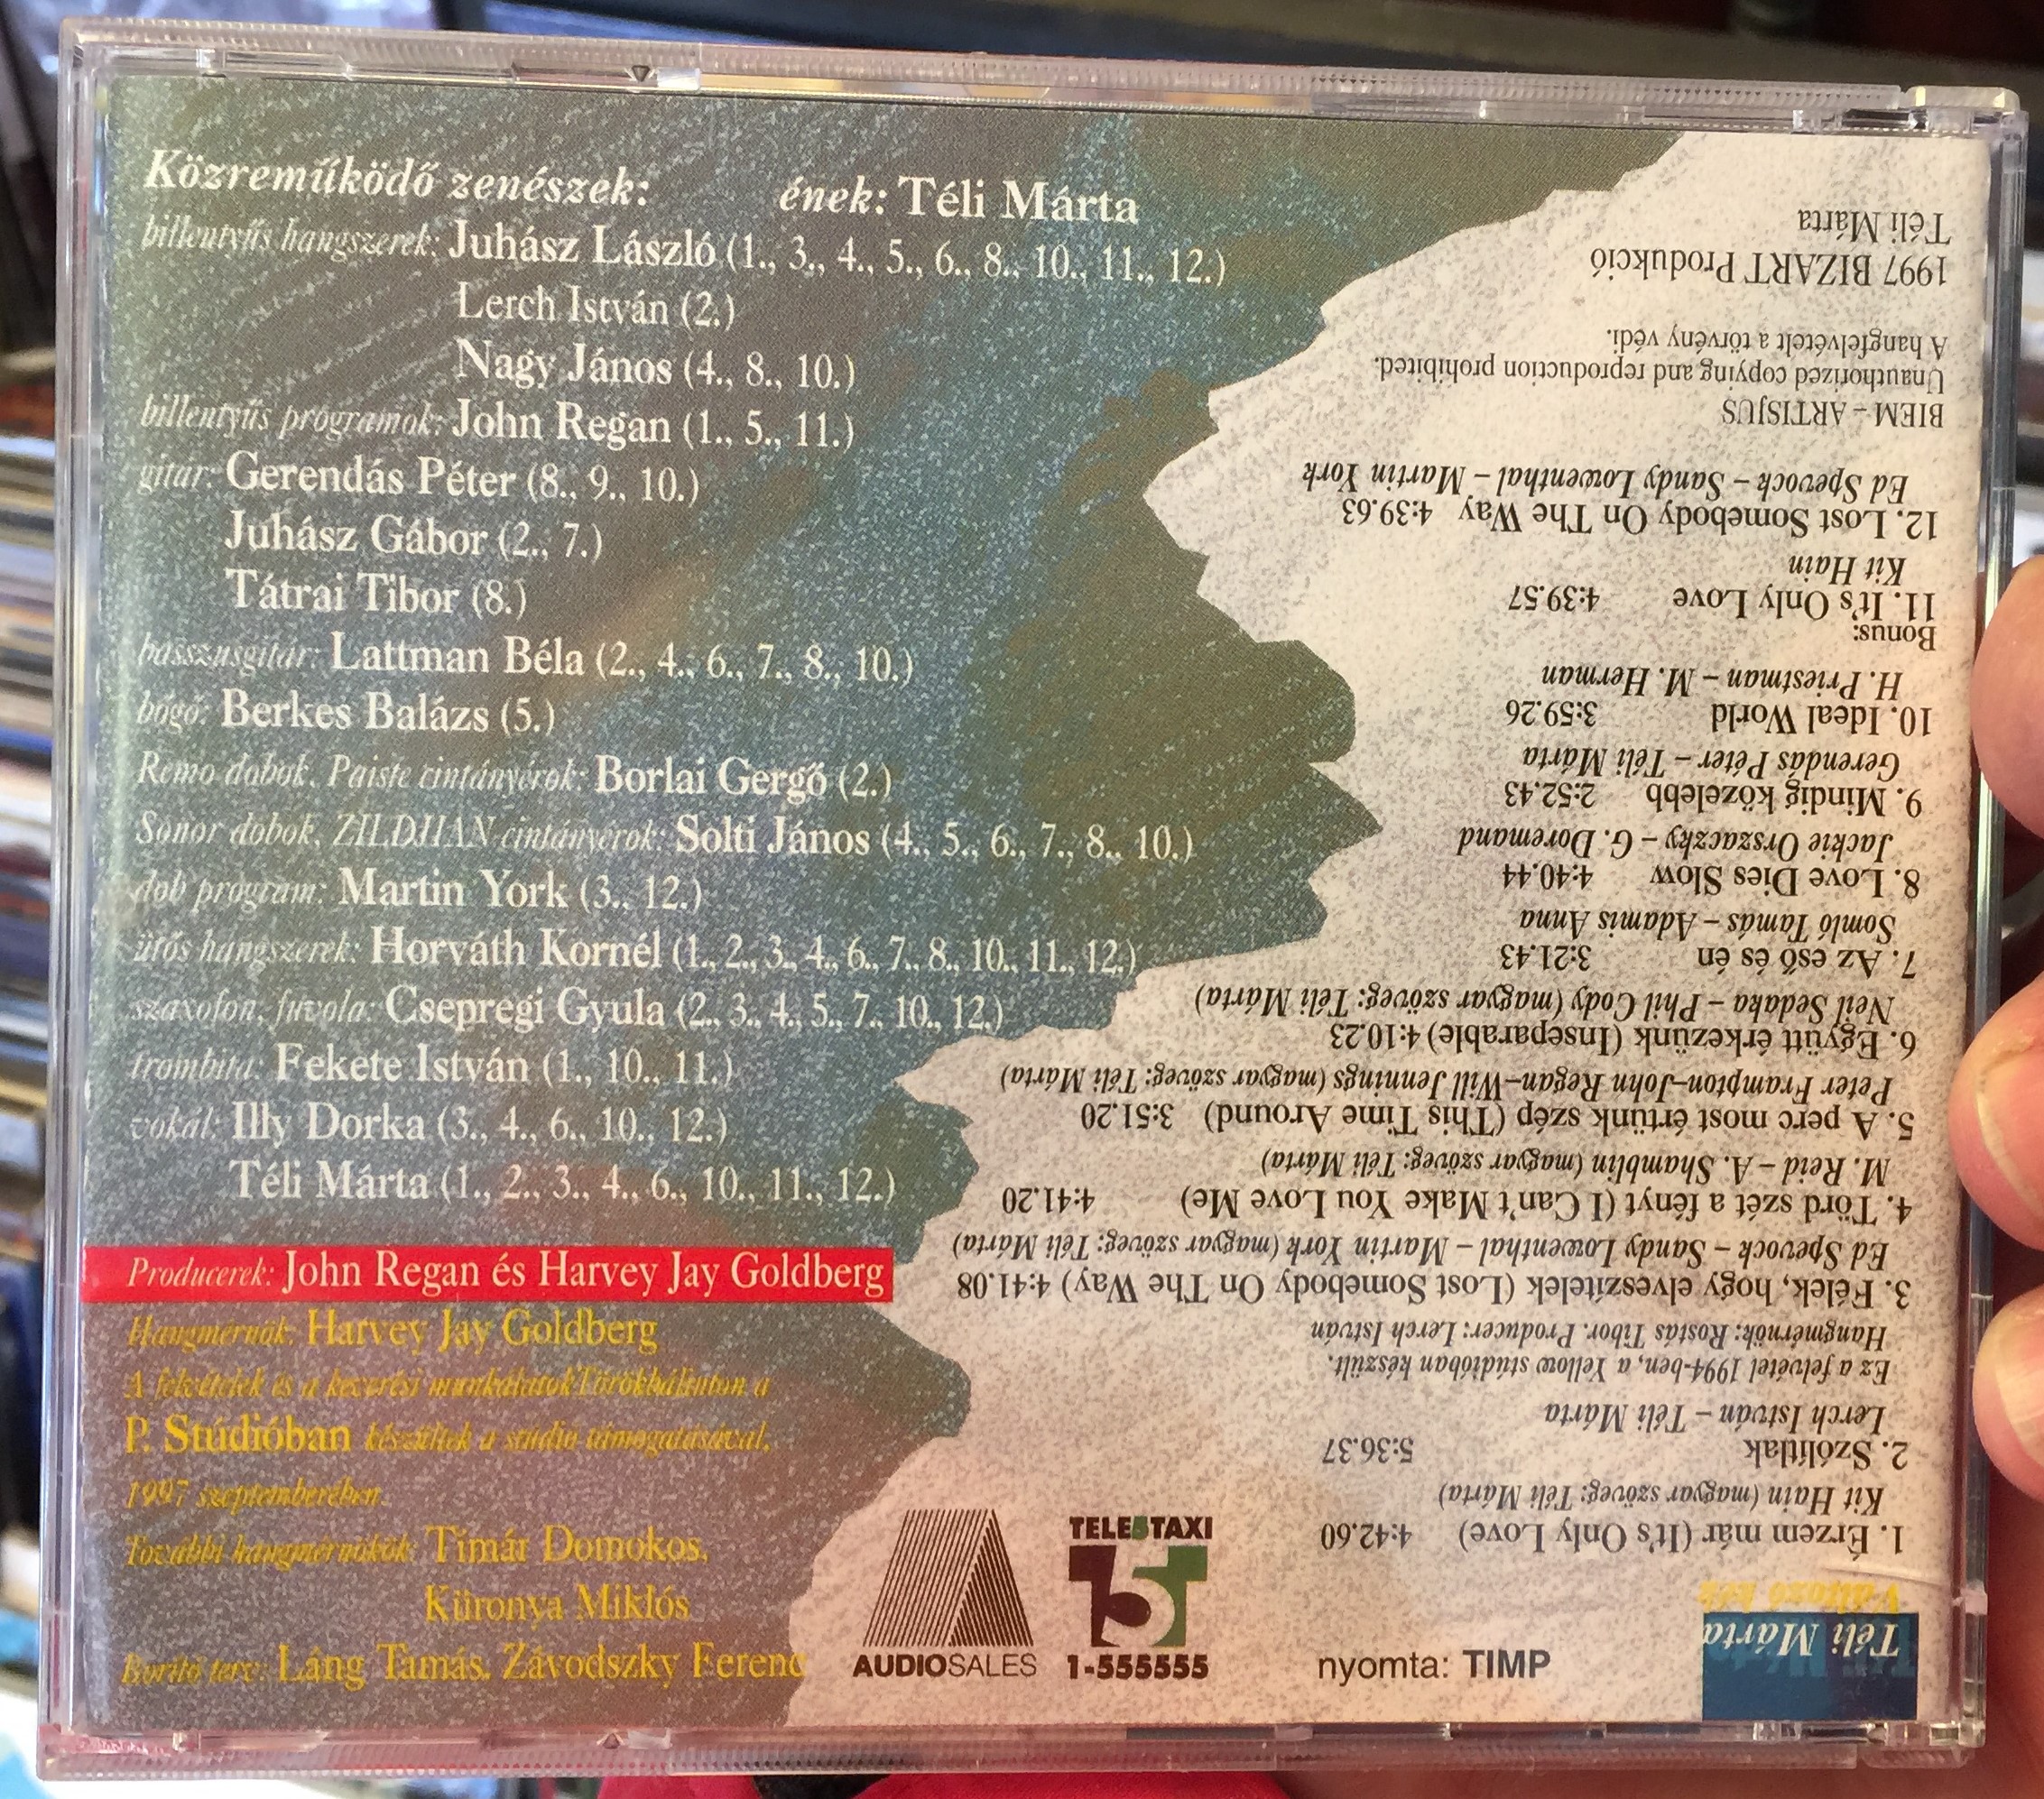 t-li-m-rta-v-ltoz-k-k-bizart-production-audio-cd-1997-2-.jpg